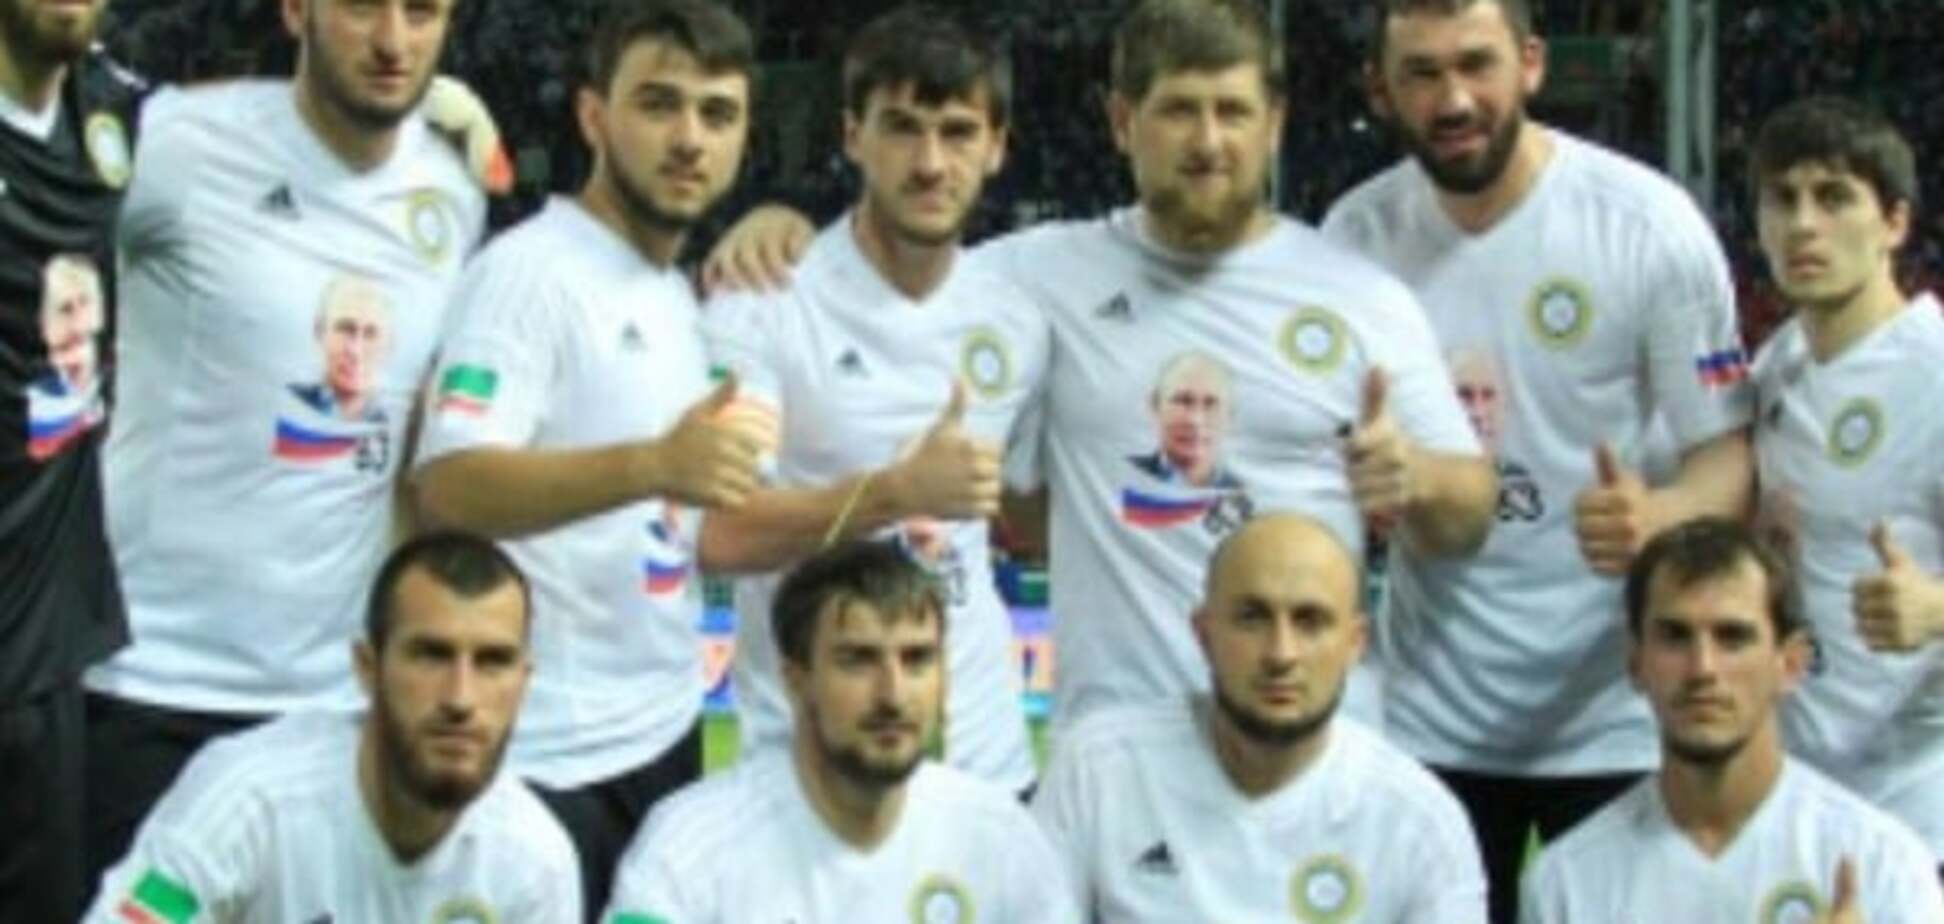 'Справжній патріот'. Голова Чечні готовий купити футболіста, який зганьбився у футболці з Путіним